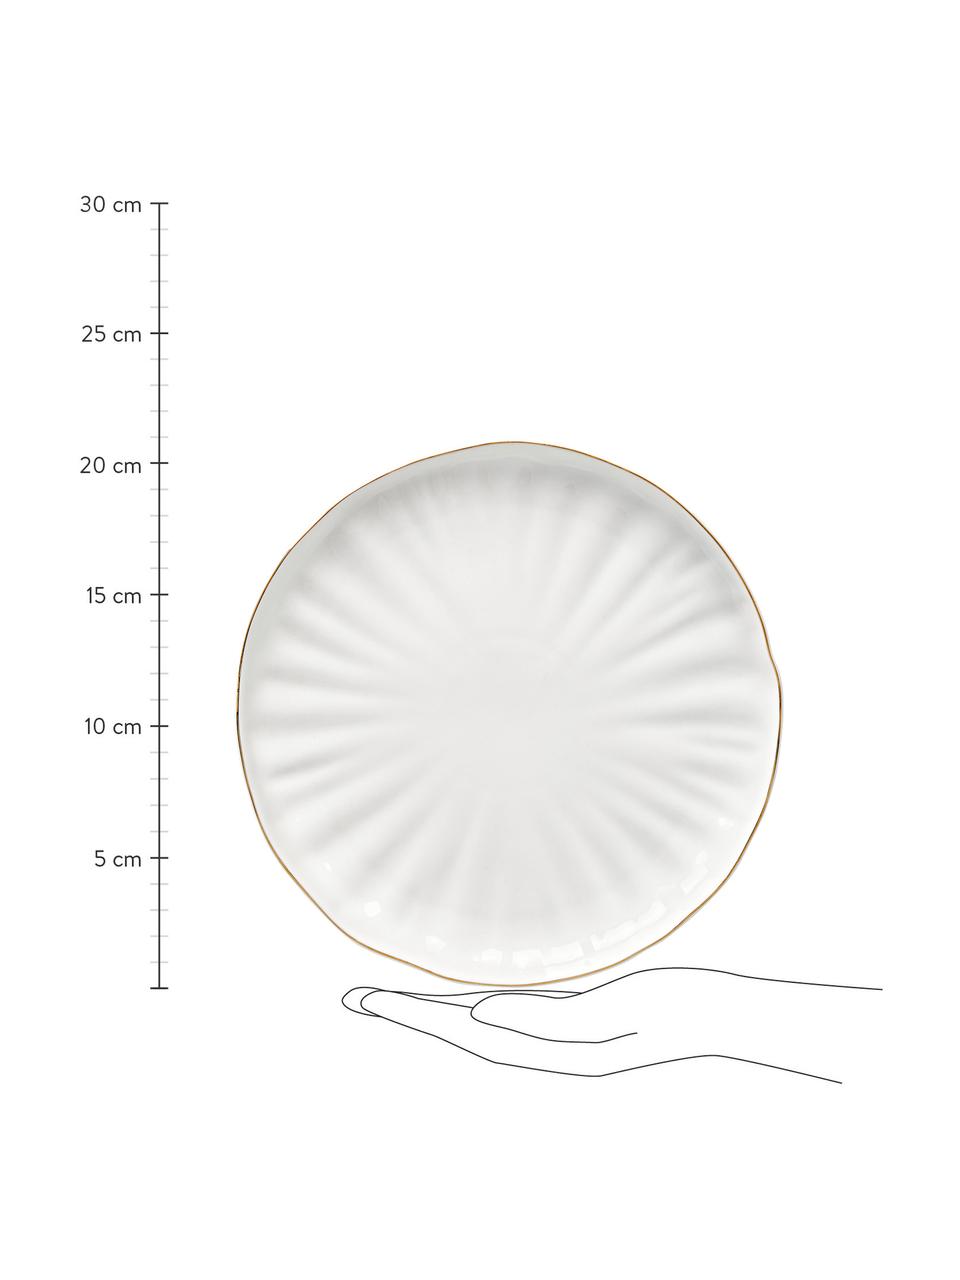 Piattino da dessert in porcellana con rilievo Sali 2 pz, Porcellana, Bianco con bordo oro, Ø 22 cm